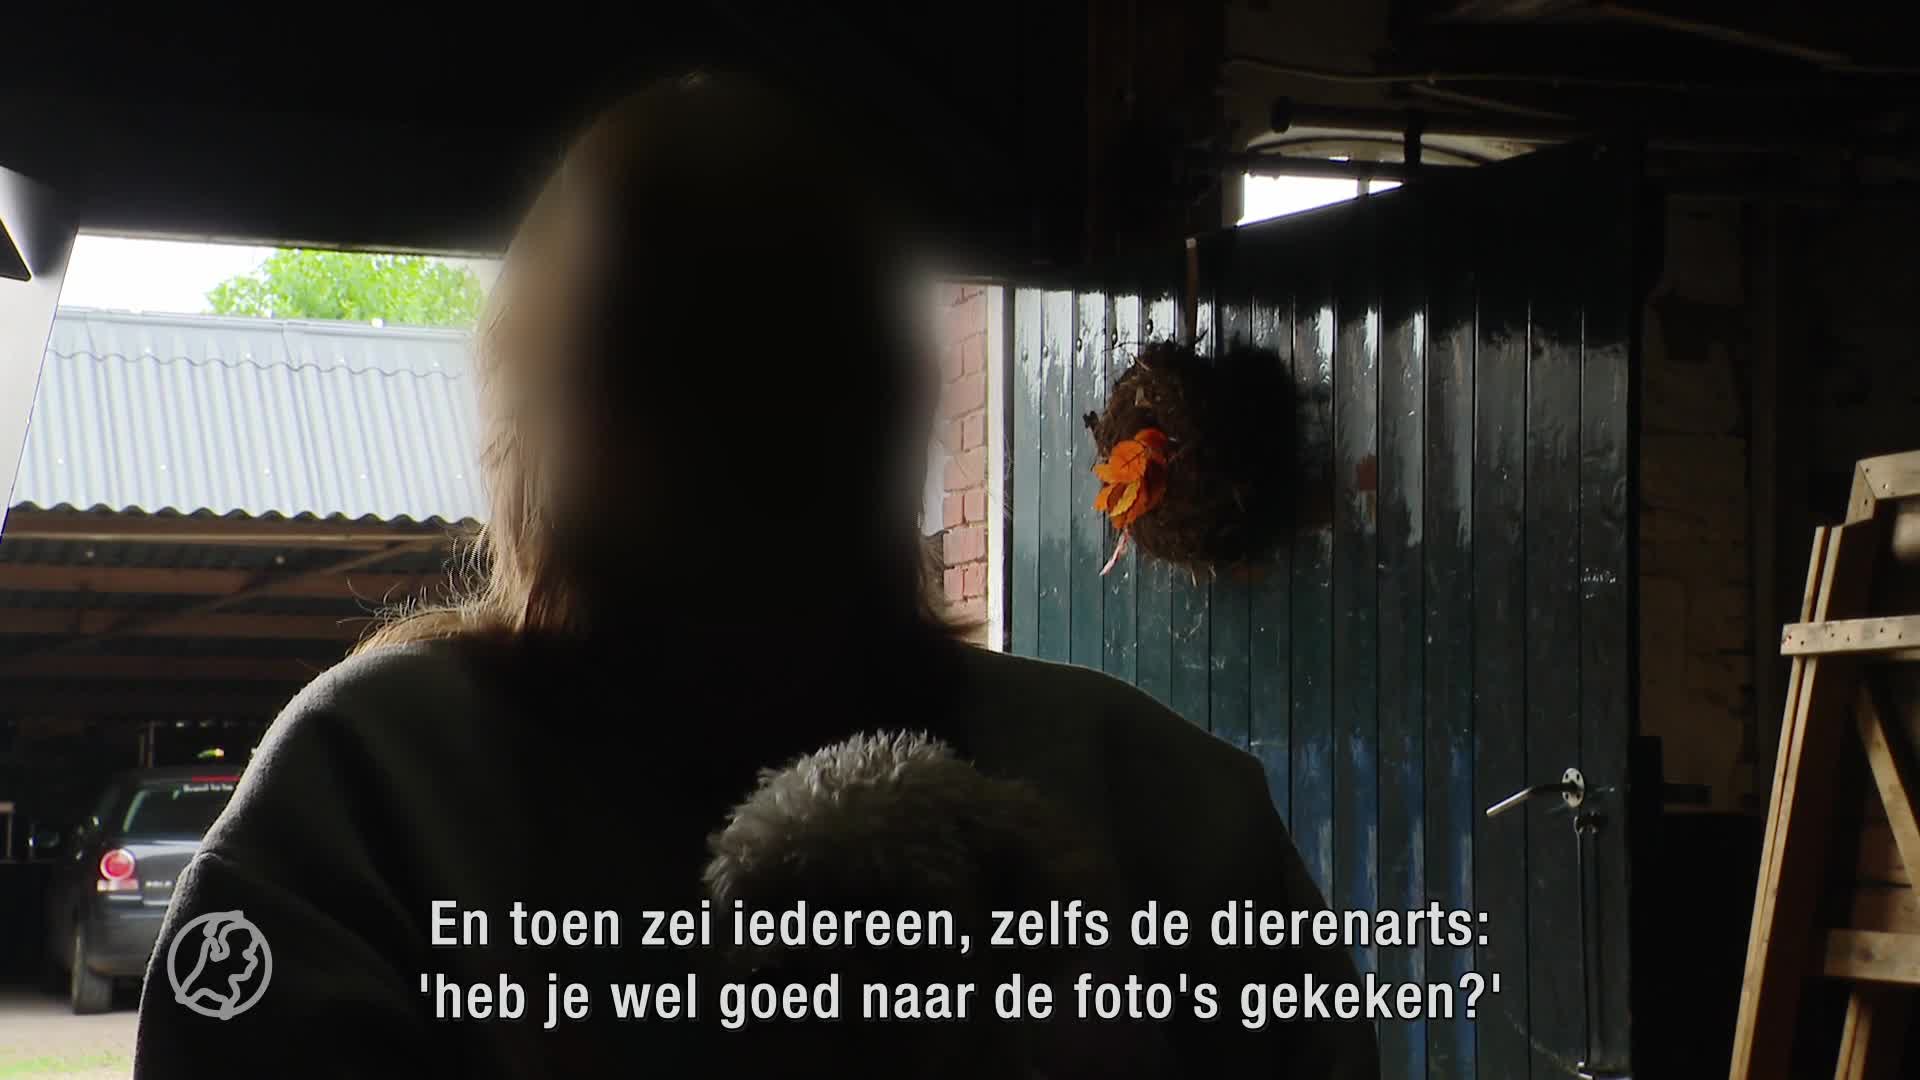 'Broodfokker' uit Zevenhuizen ziet honden als handelswaar en bedreigd gedupeerden